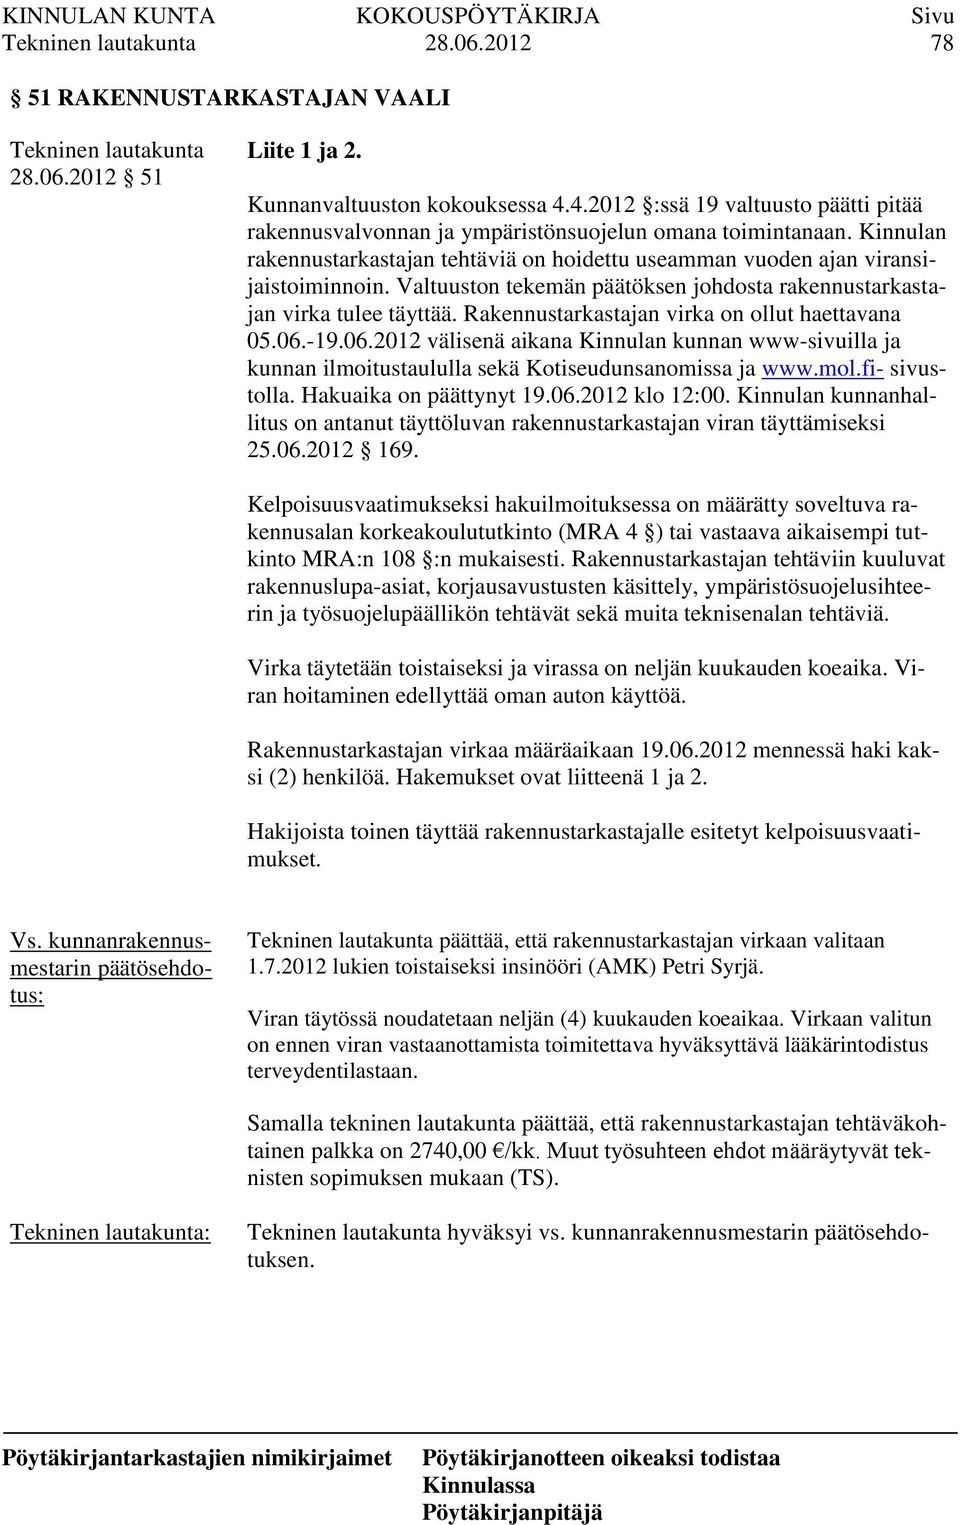 Rakennustarkastajan virka on ollut haettavana 05.06.-19.06.2012 välisenä aikana Kinnulan kunnan www-sivuilla ja kunnan ilmoitustaululla sekä Kotiseudunsanomissa ja www.mol.fi- sivustolla.